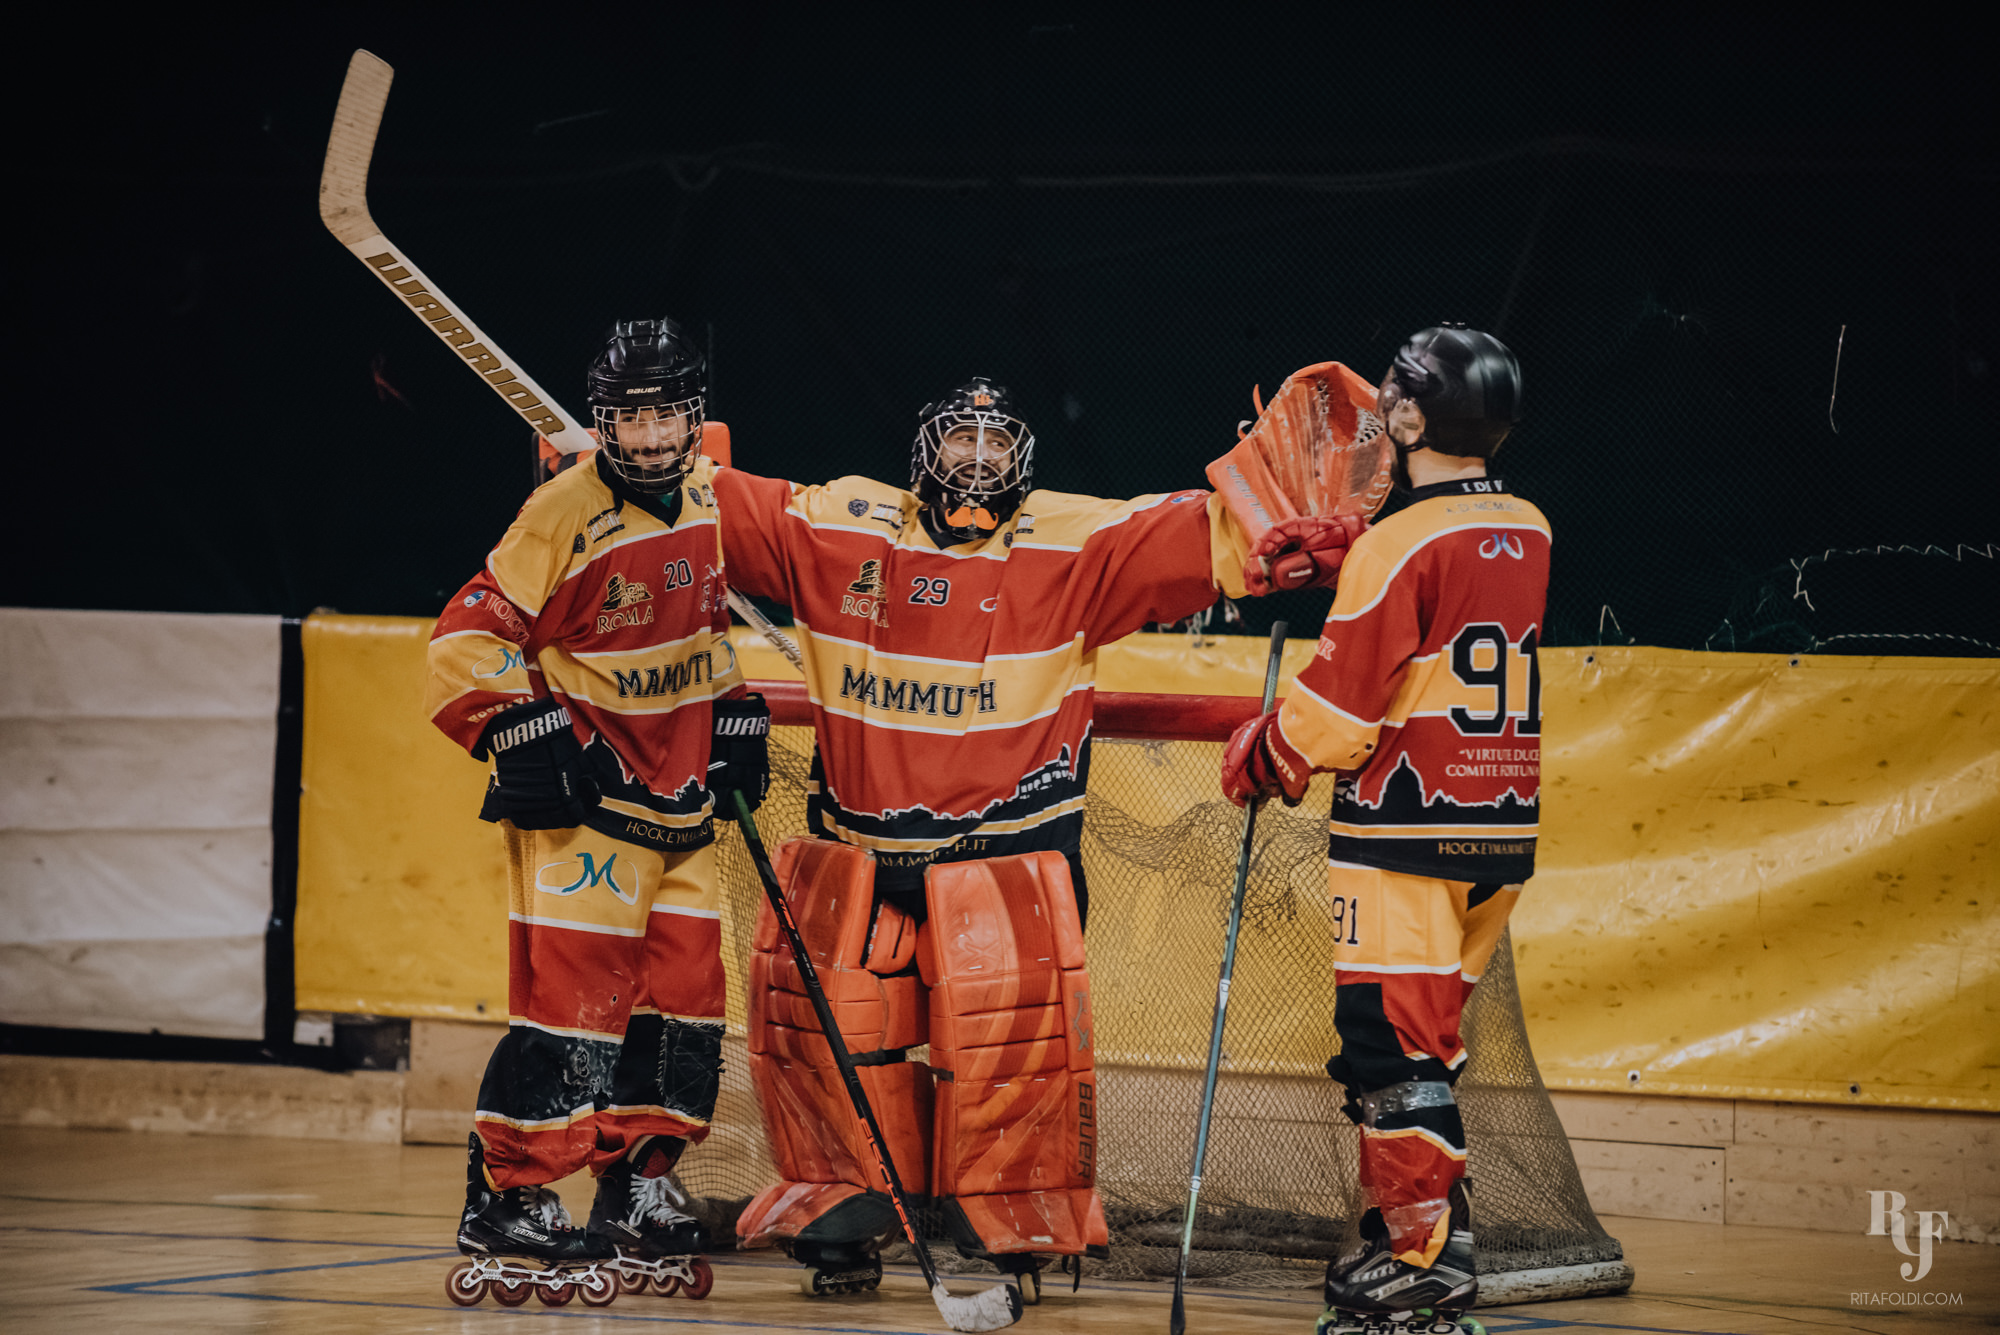 hockey inline roma, roma hockey, rome hockey, hockey mammuth, mammuth roma, hockey in rome, rita foldi photography